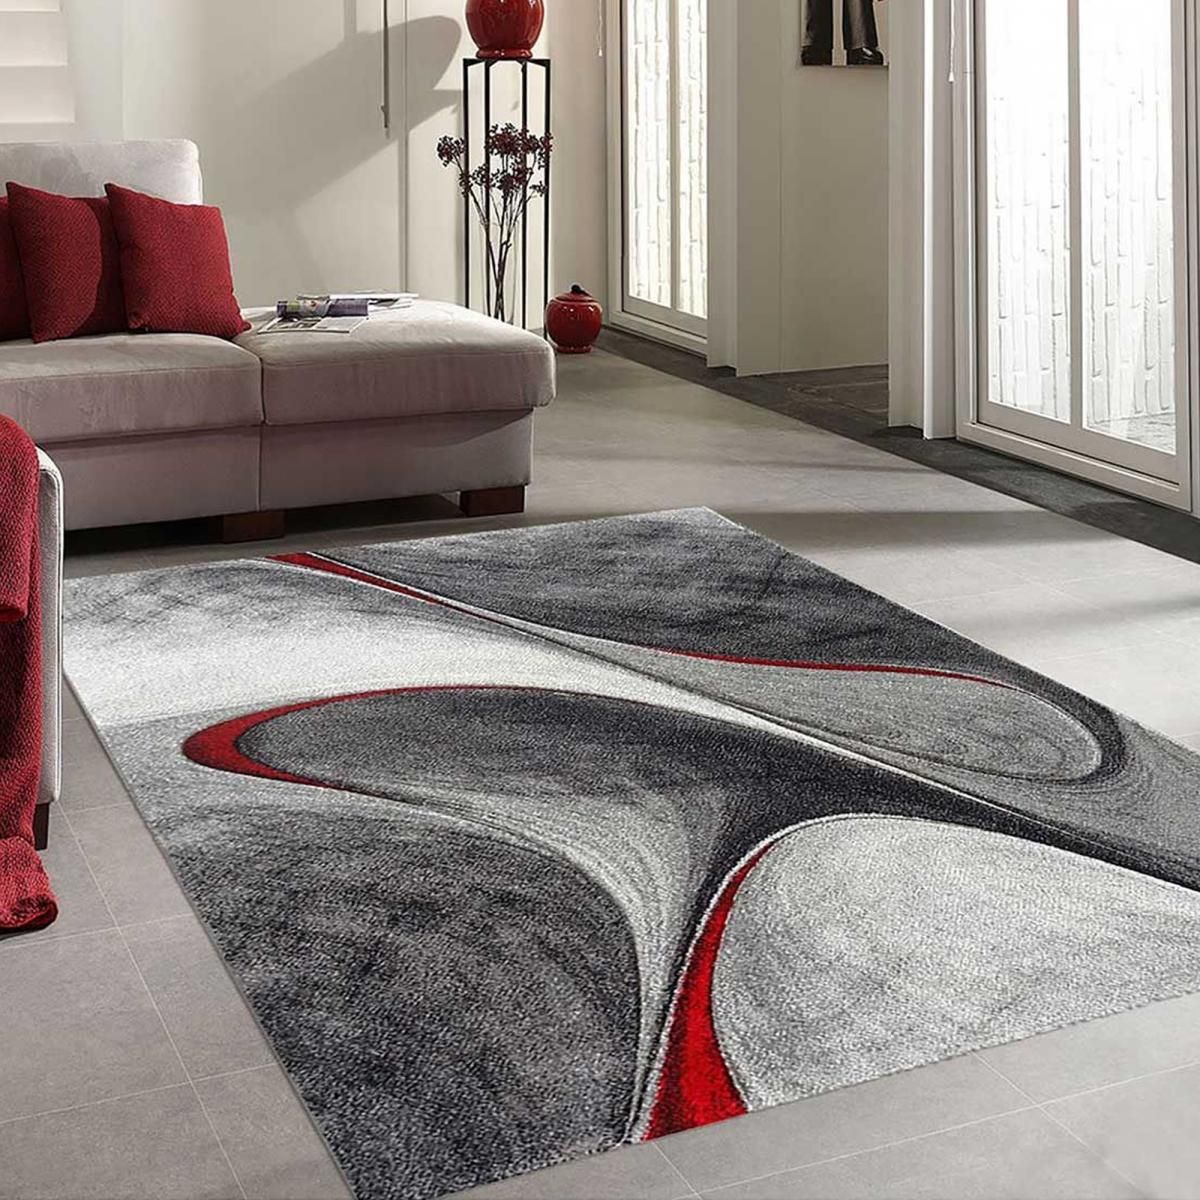 Un tapis pour habiller votre salon